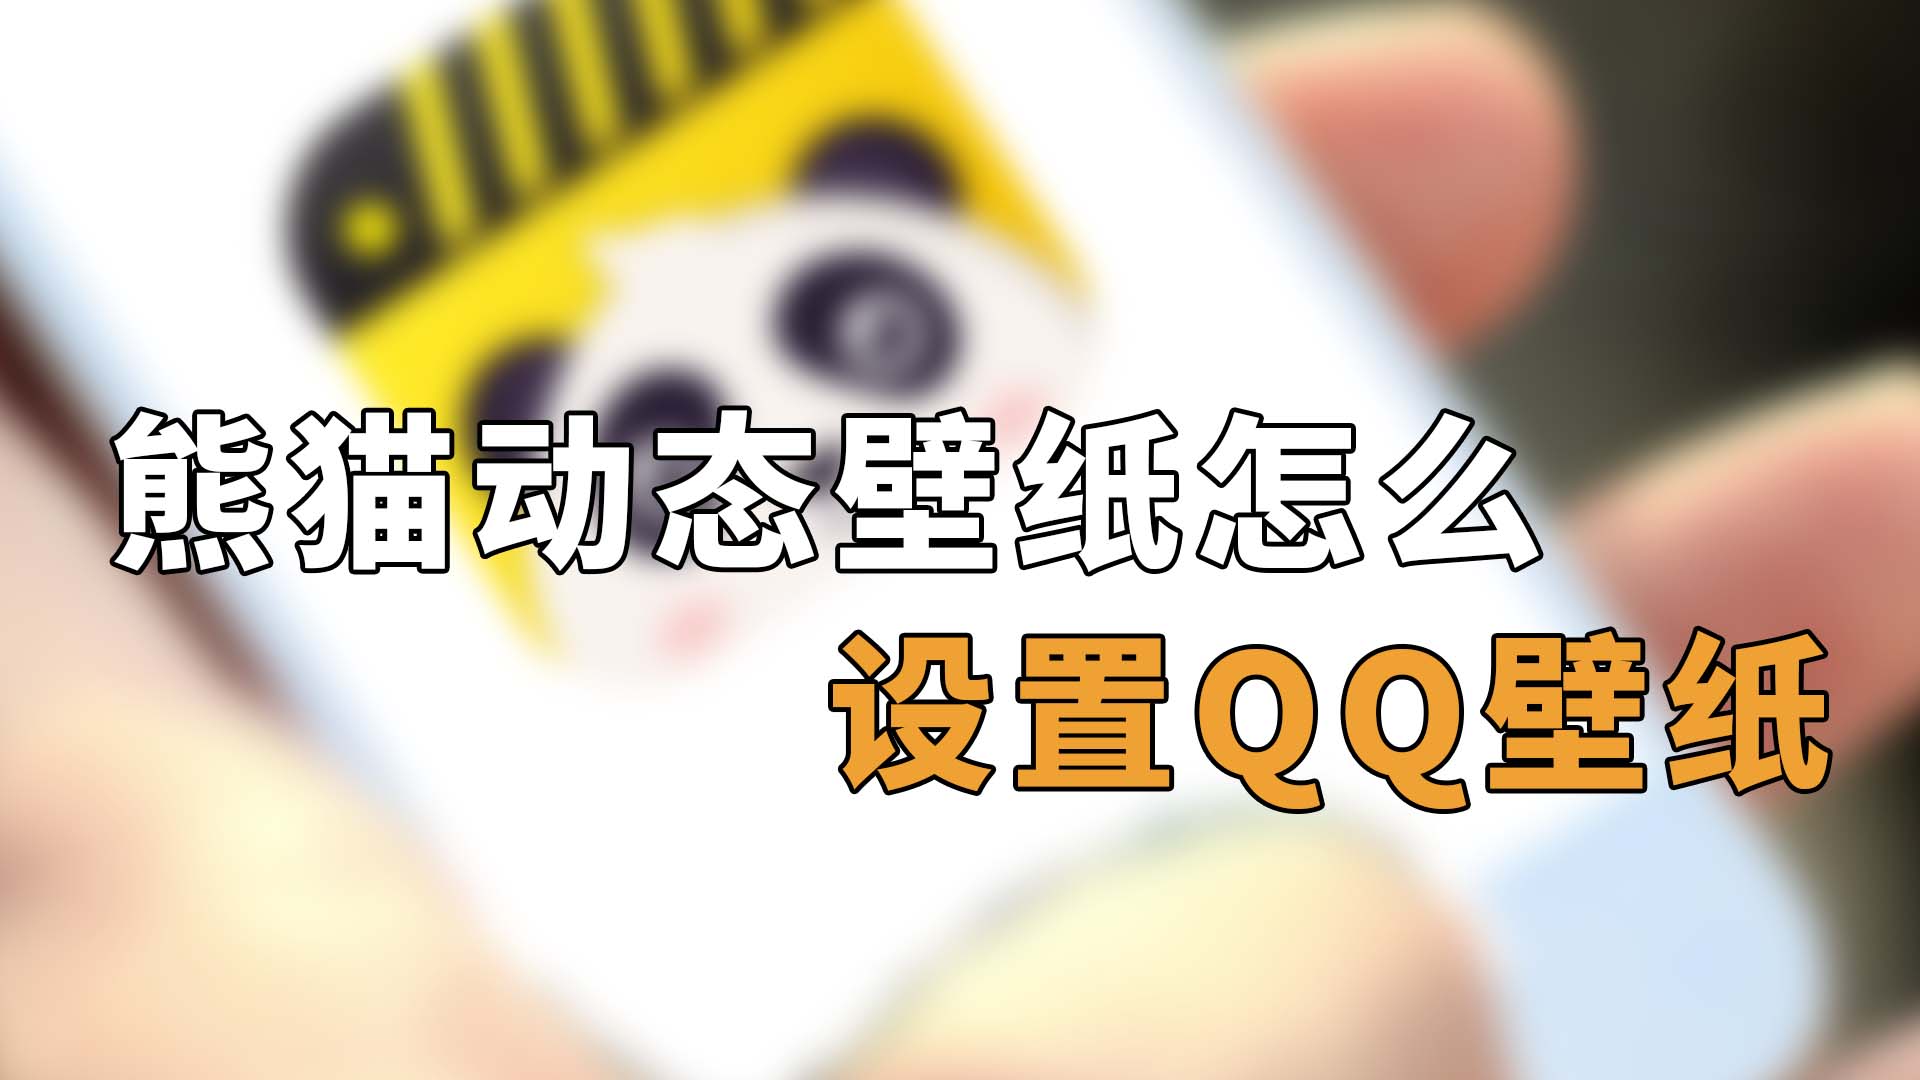 熊猫动态壁纸怎么设置qq壁纸 熊猫动态壁纸怎么用在QQ主题上